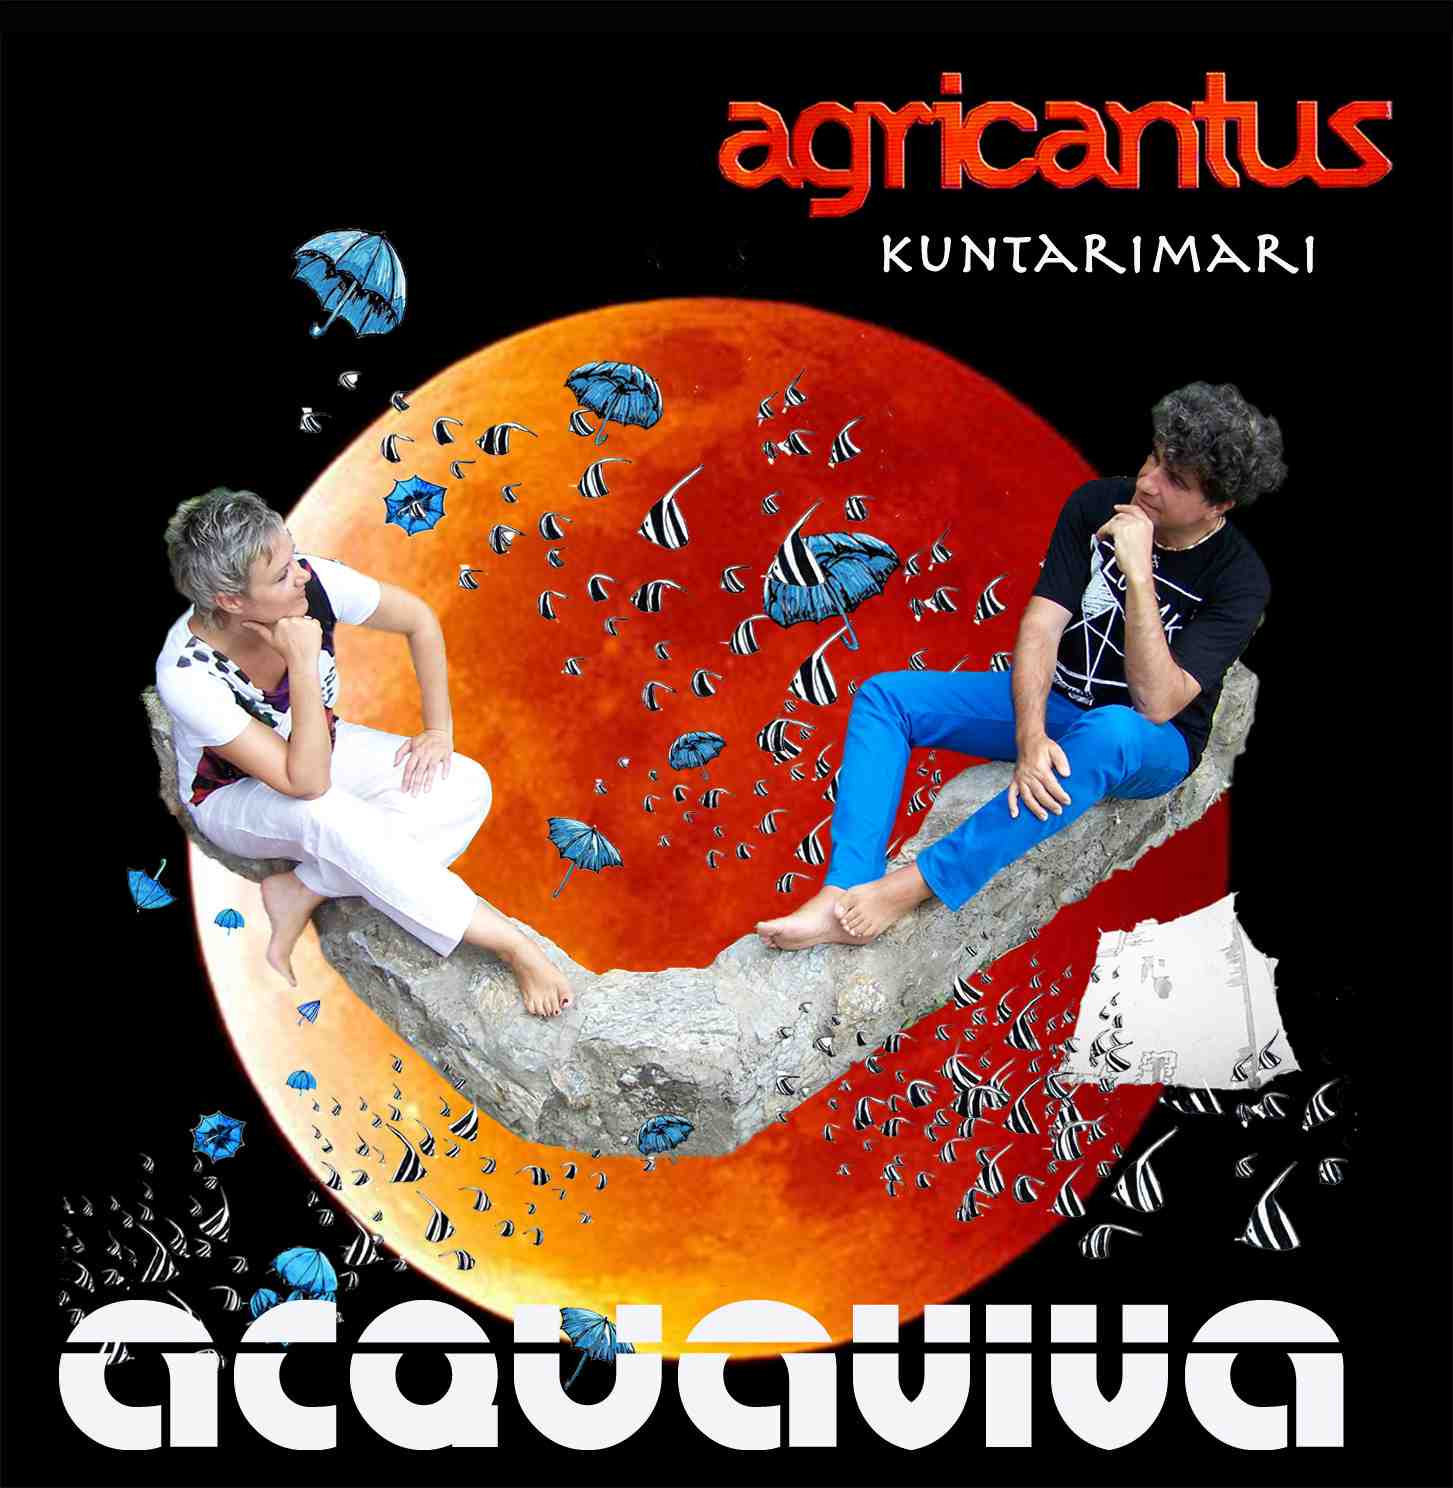 Acquaviva_Agricantus